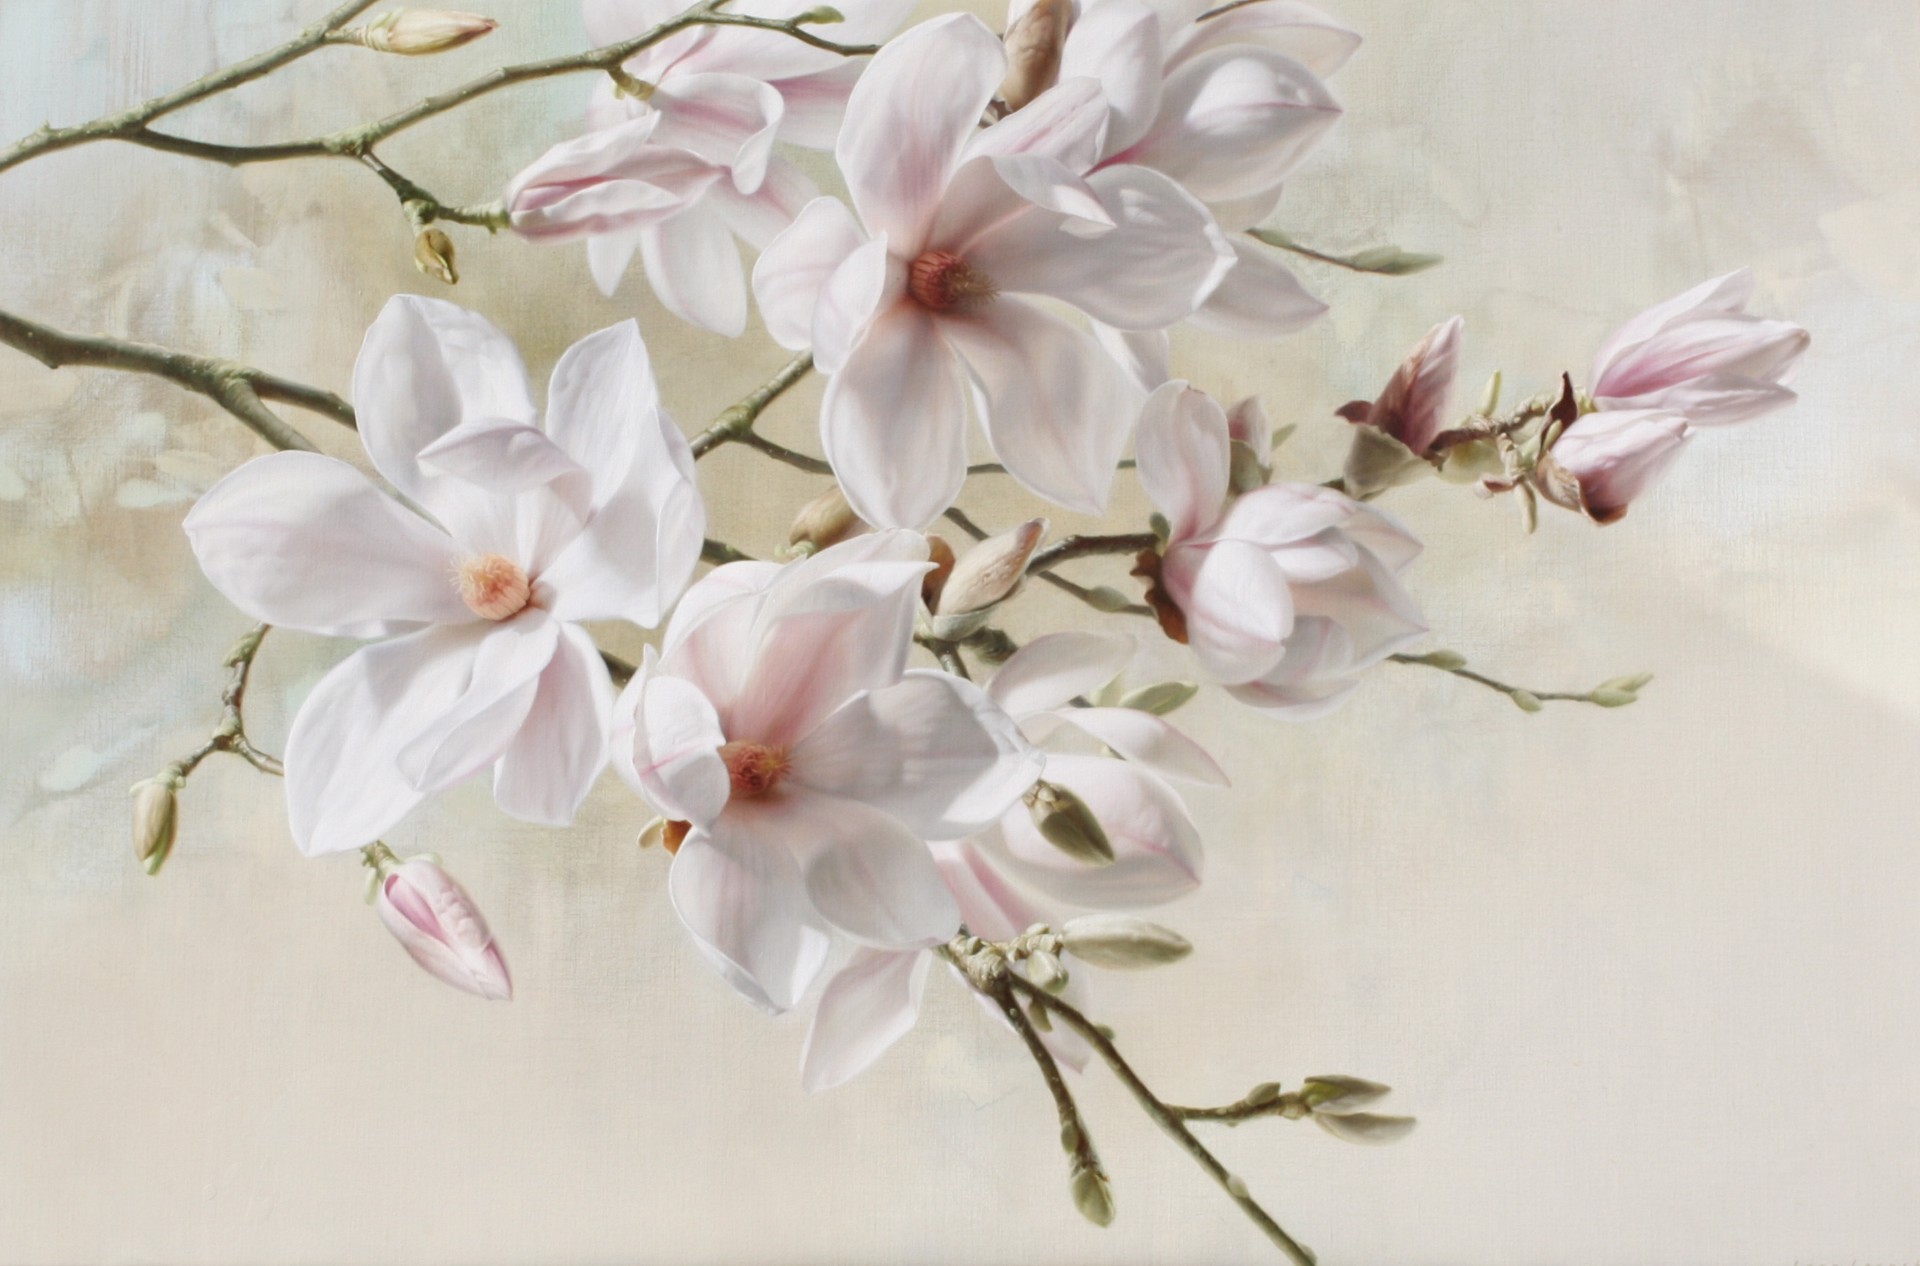 Magnolias by Igor Levashov